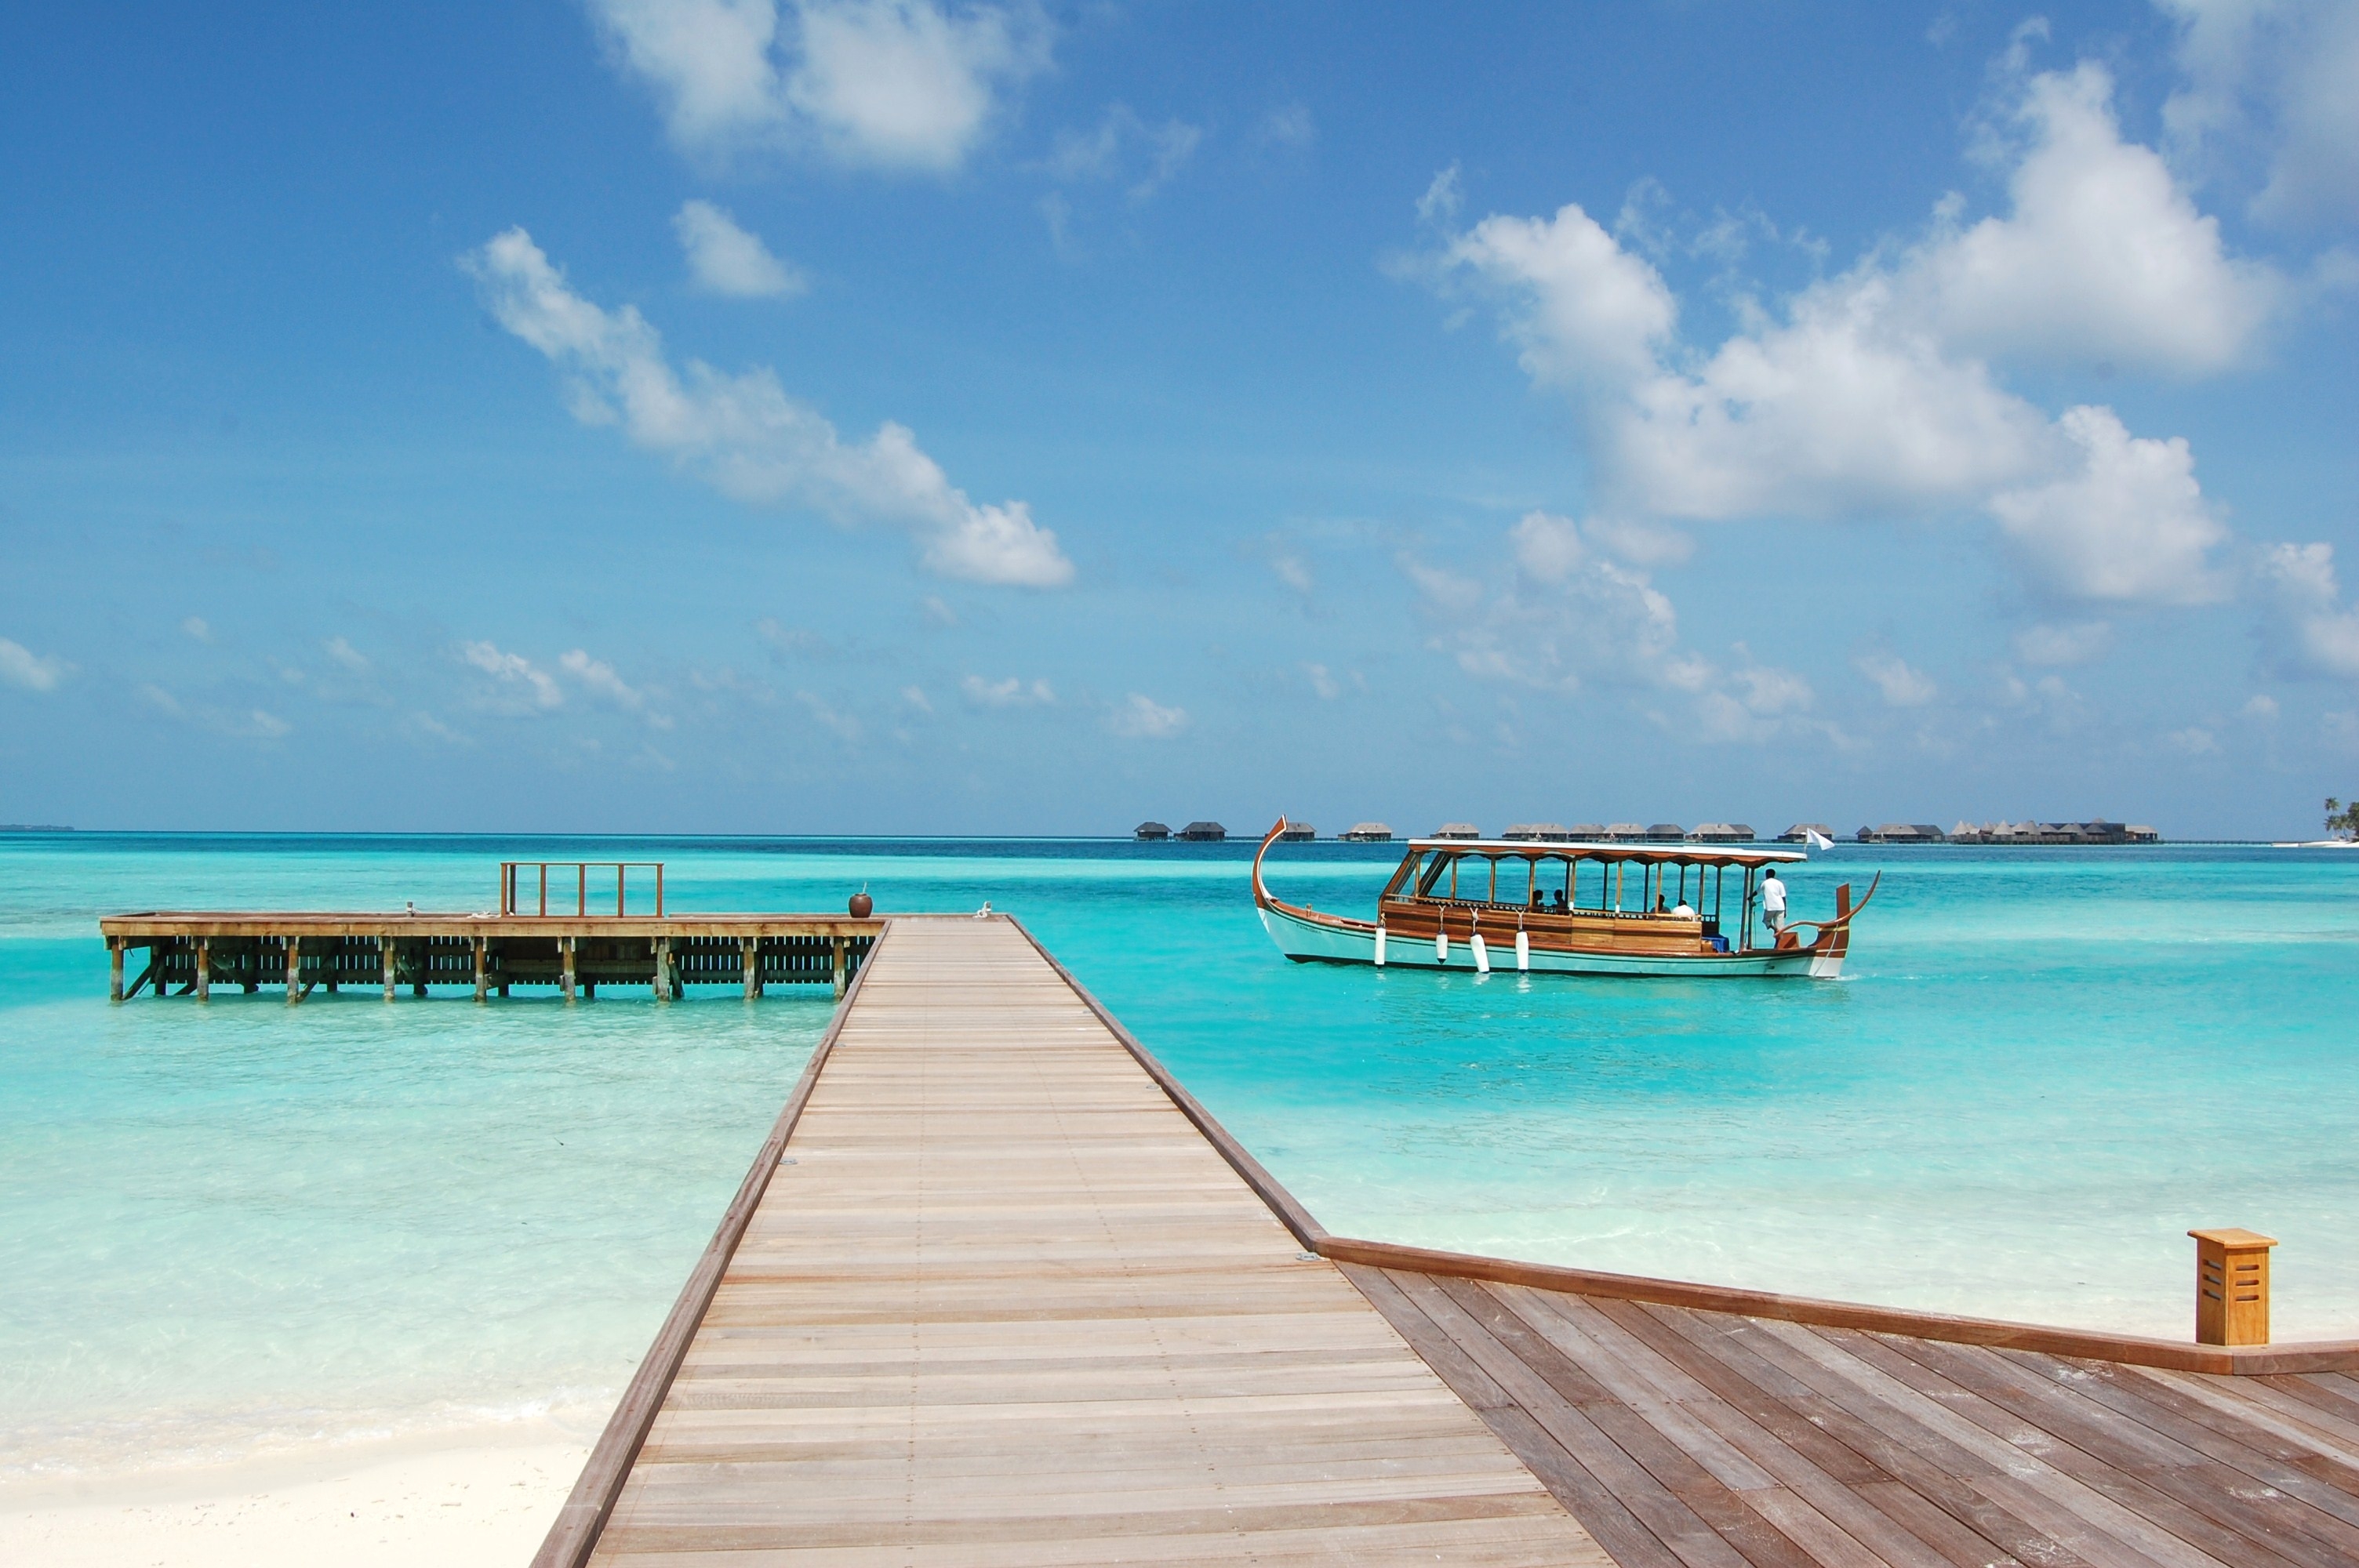 Скачать обои бесплатно Мальдивы, Природа, Небо, Пляж, Море картинка на рабочий стол ПК